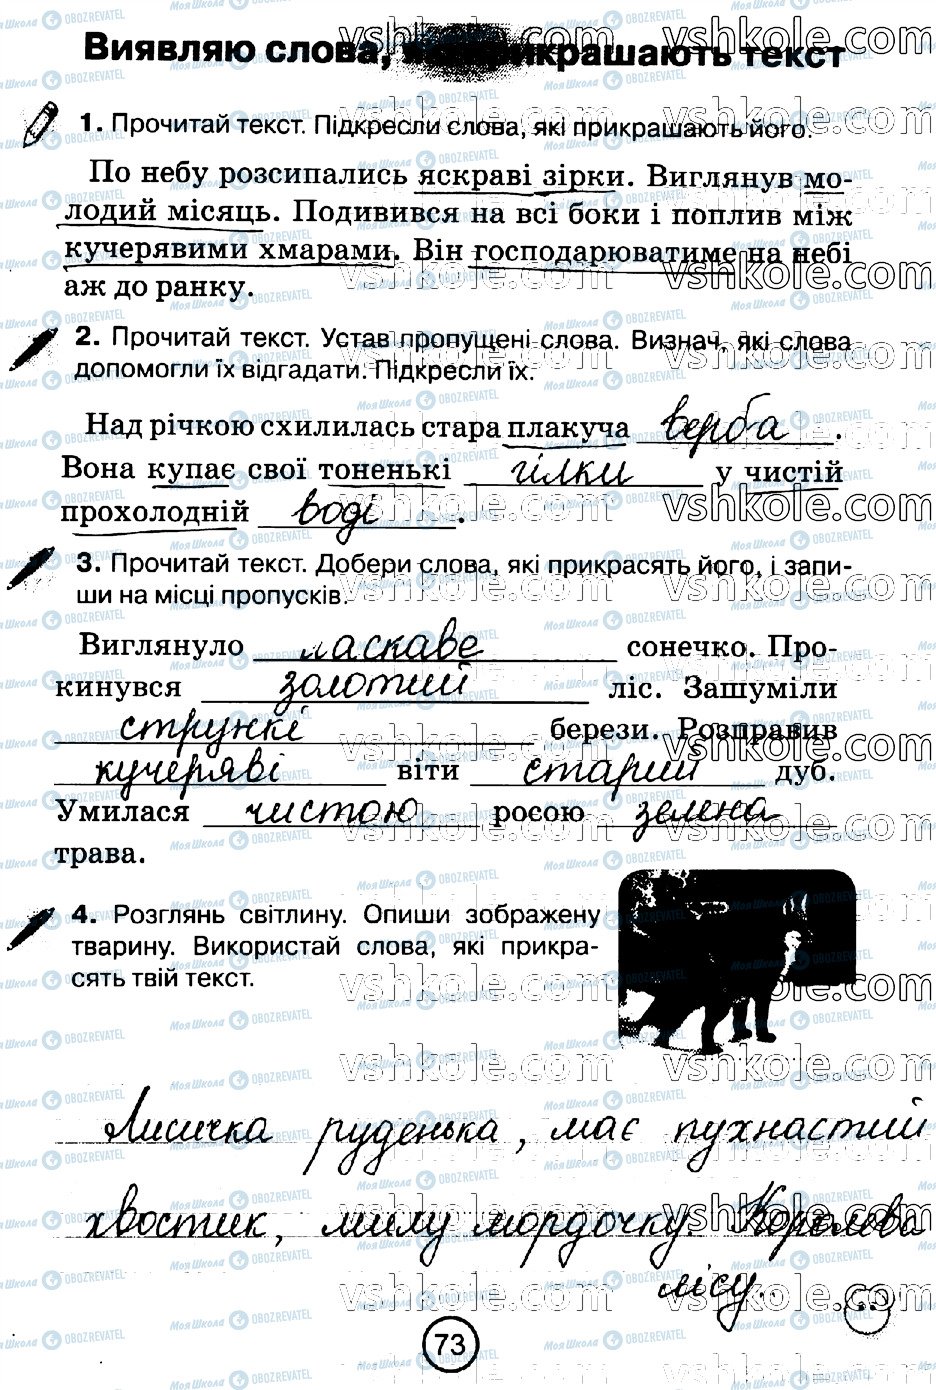 ГДЗ Українська мова 2 клас сторінка стр73